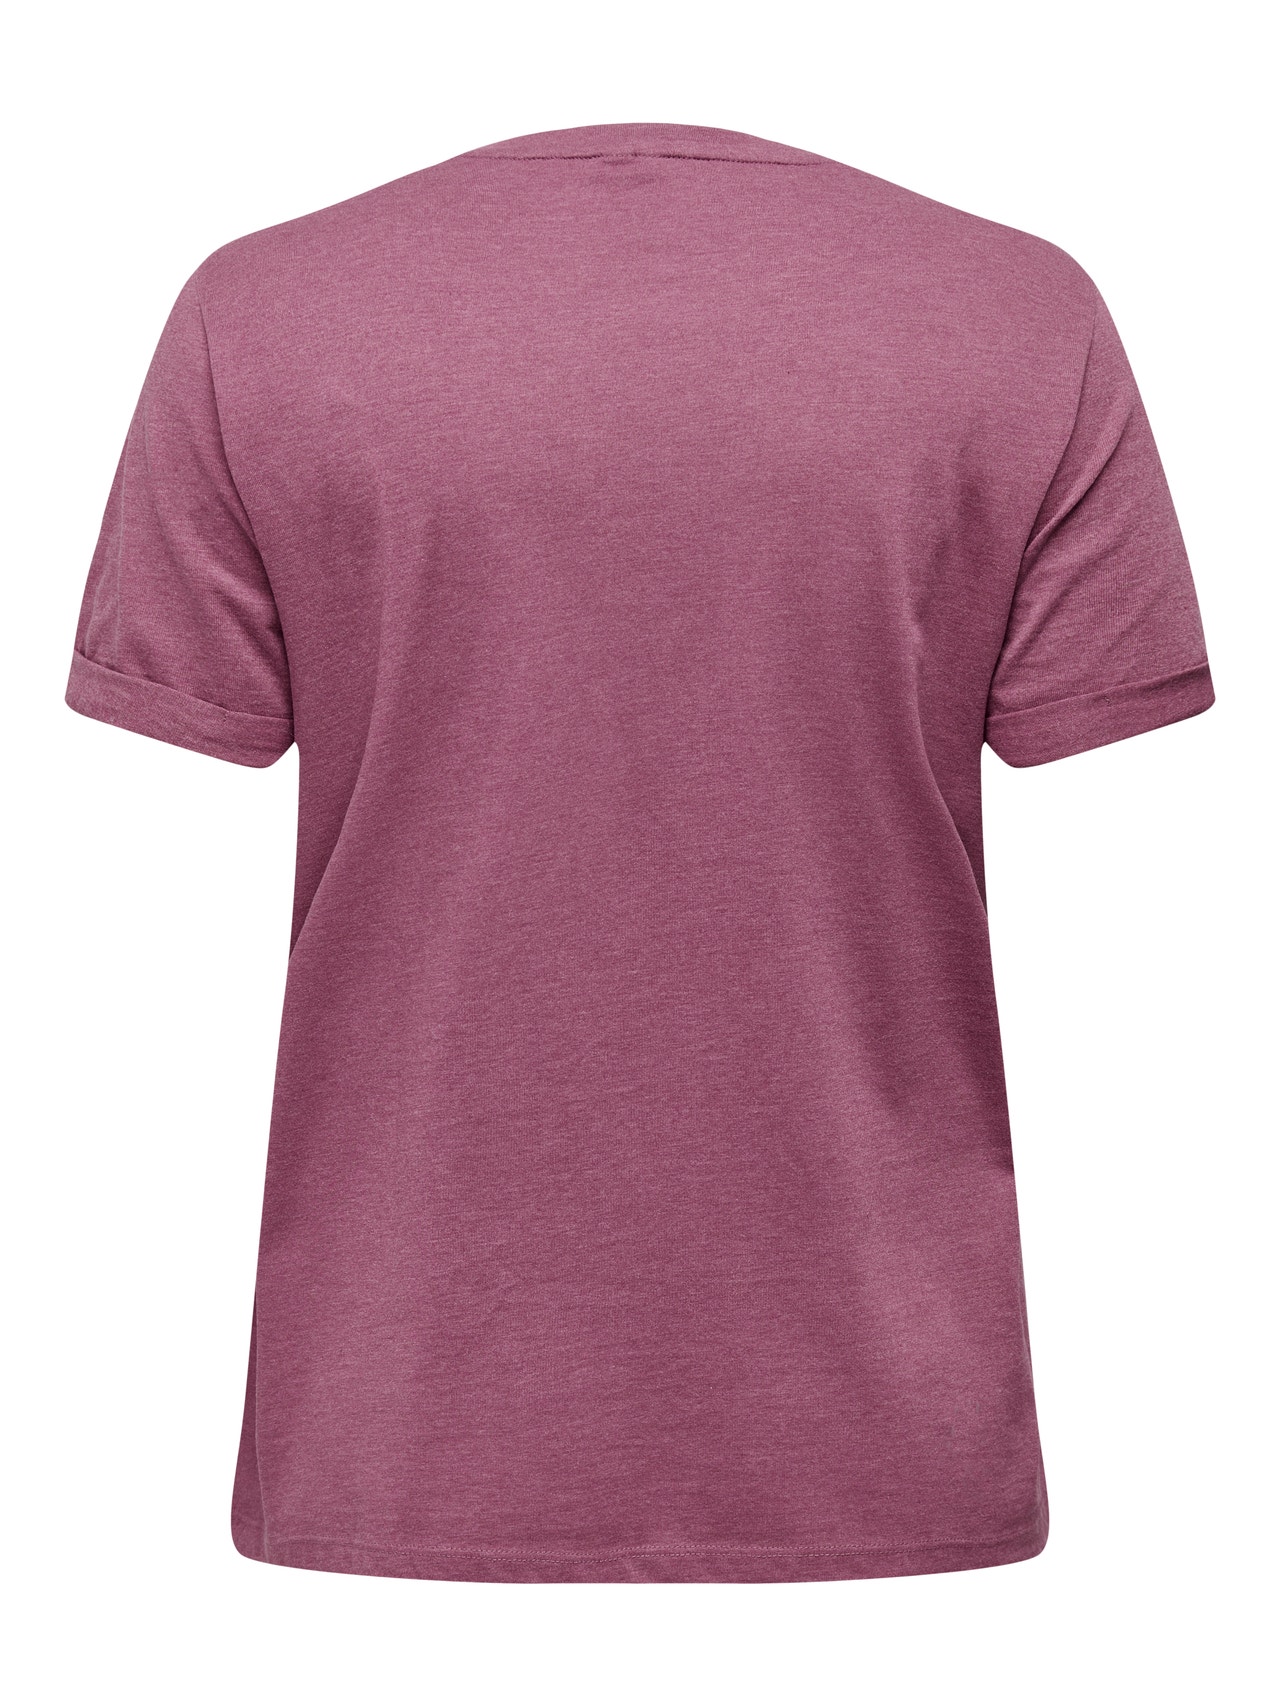 ONLY Curvy Reg T-Shirt -Renaissance Rose - 15251650